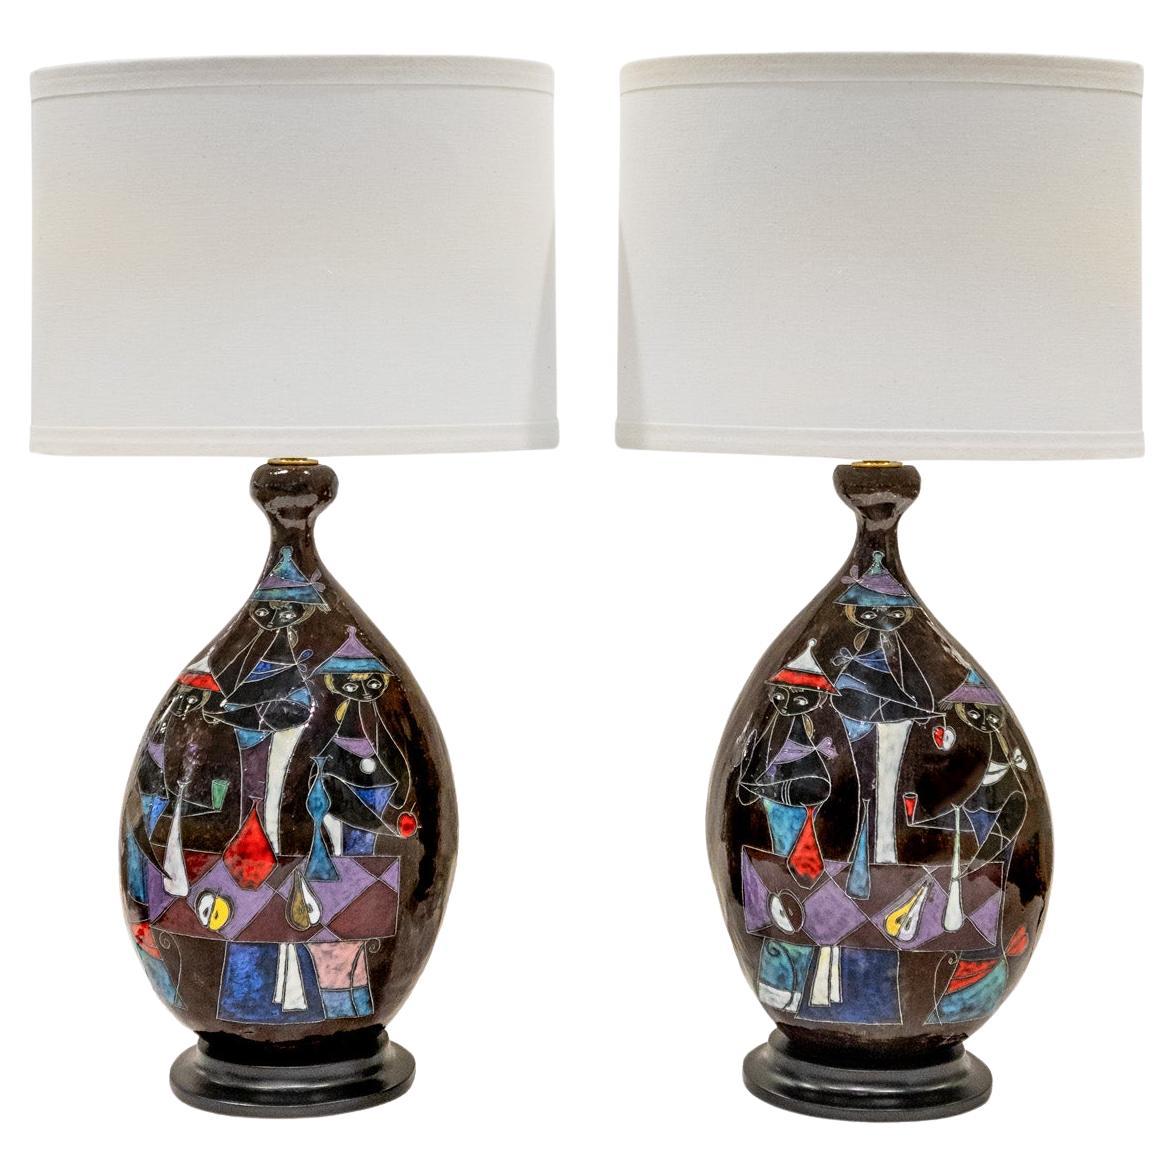 Marcello Fantoni, Paar Keramik-Tischlampen mit figürlichem Motiv, 1950er Jahre (Signiert)